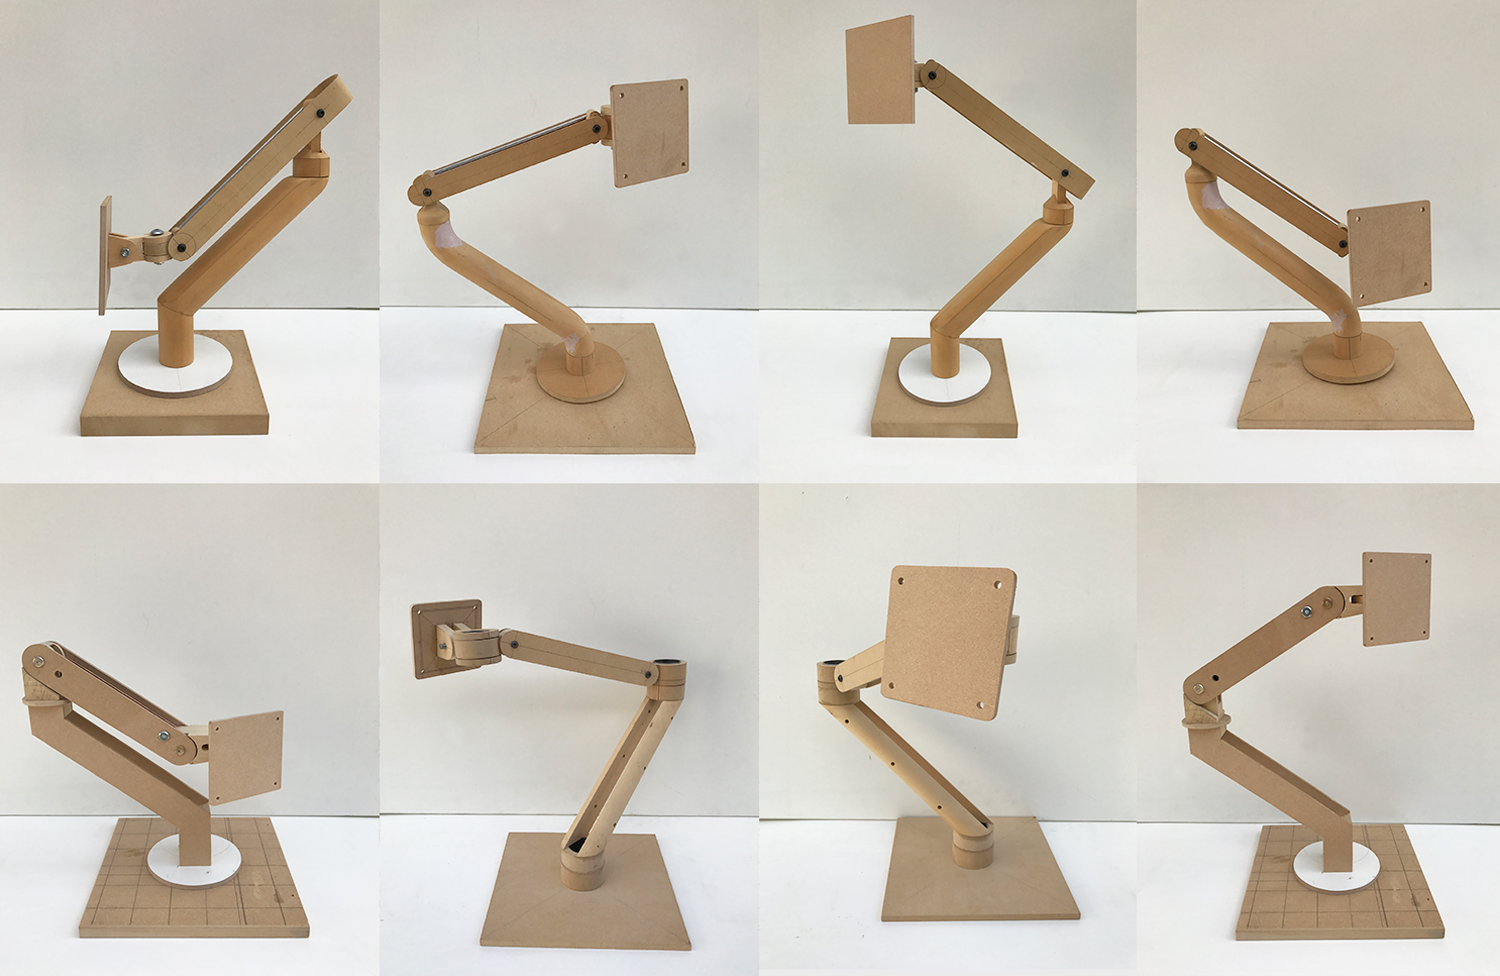 rwa-kata-wooden-prototypes.jpg